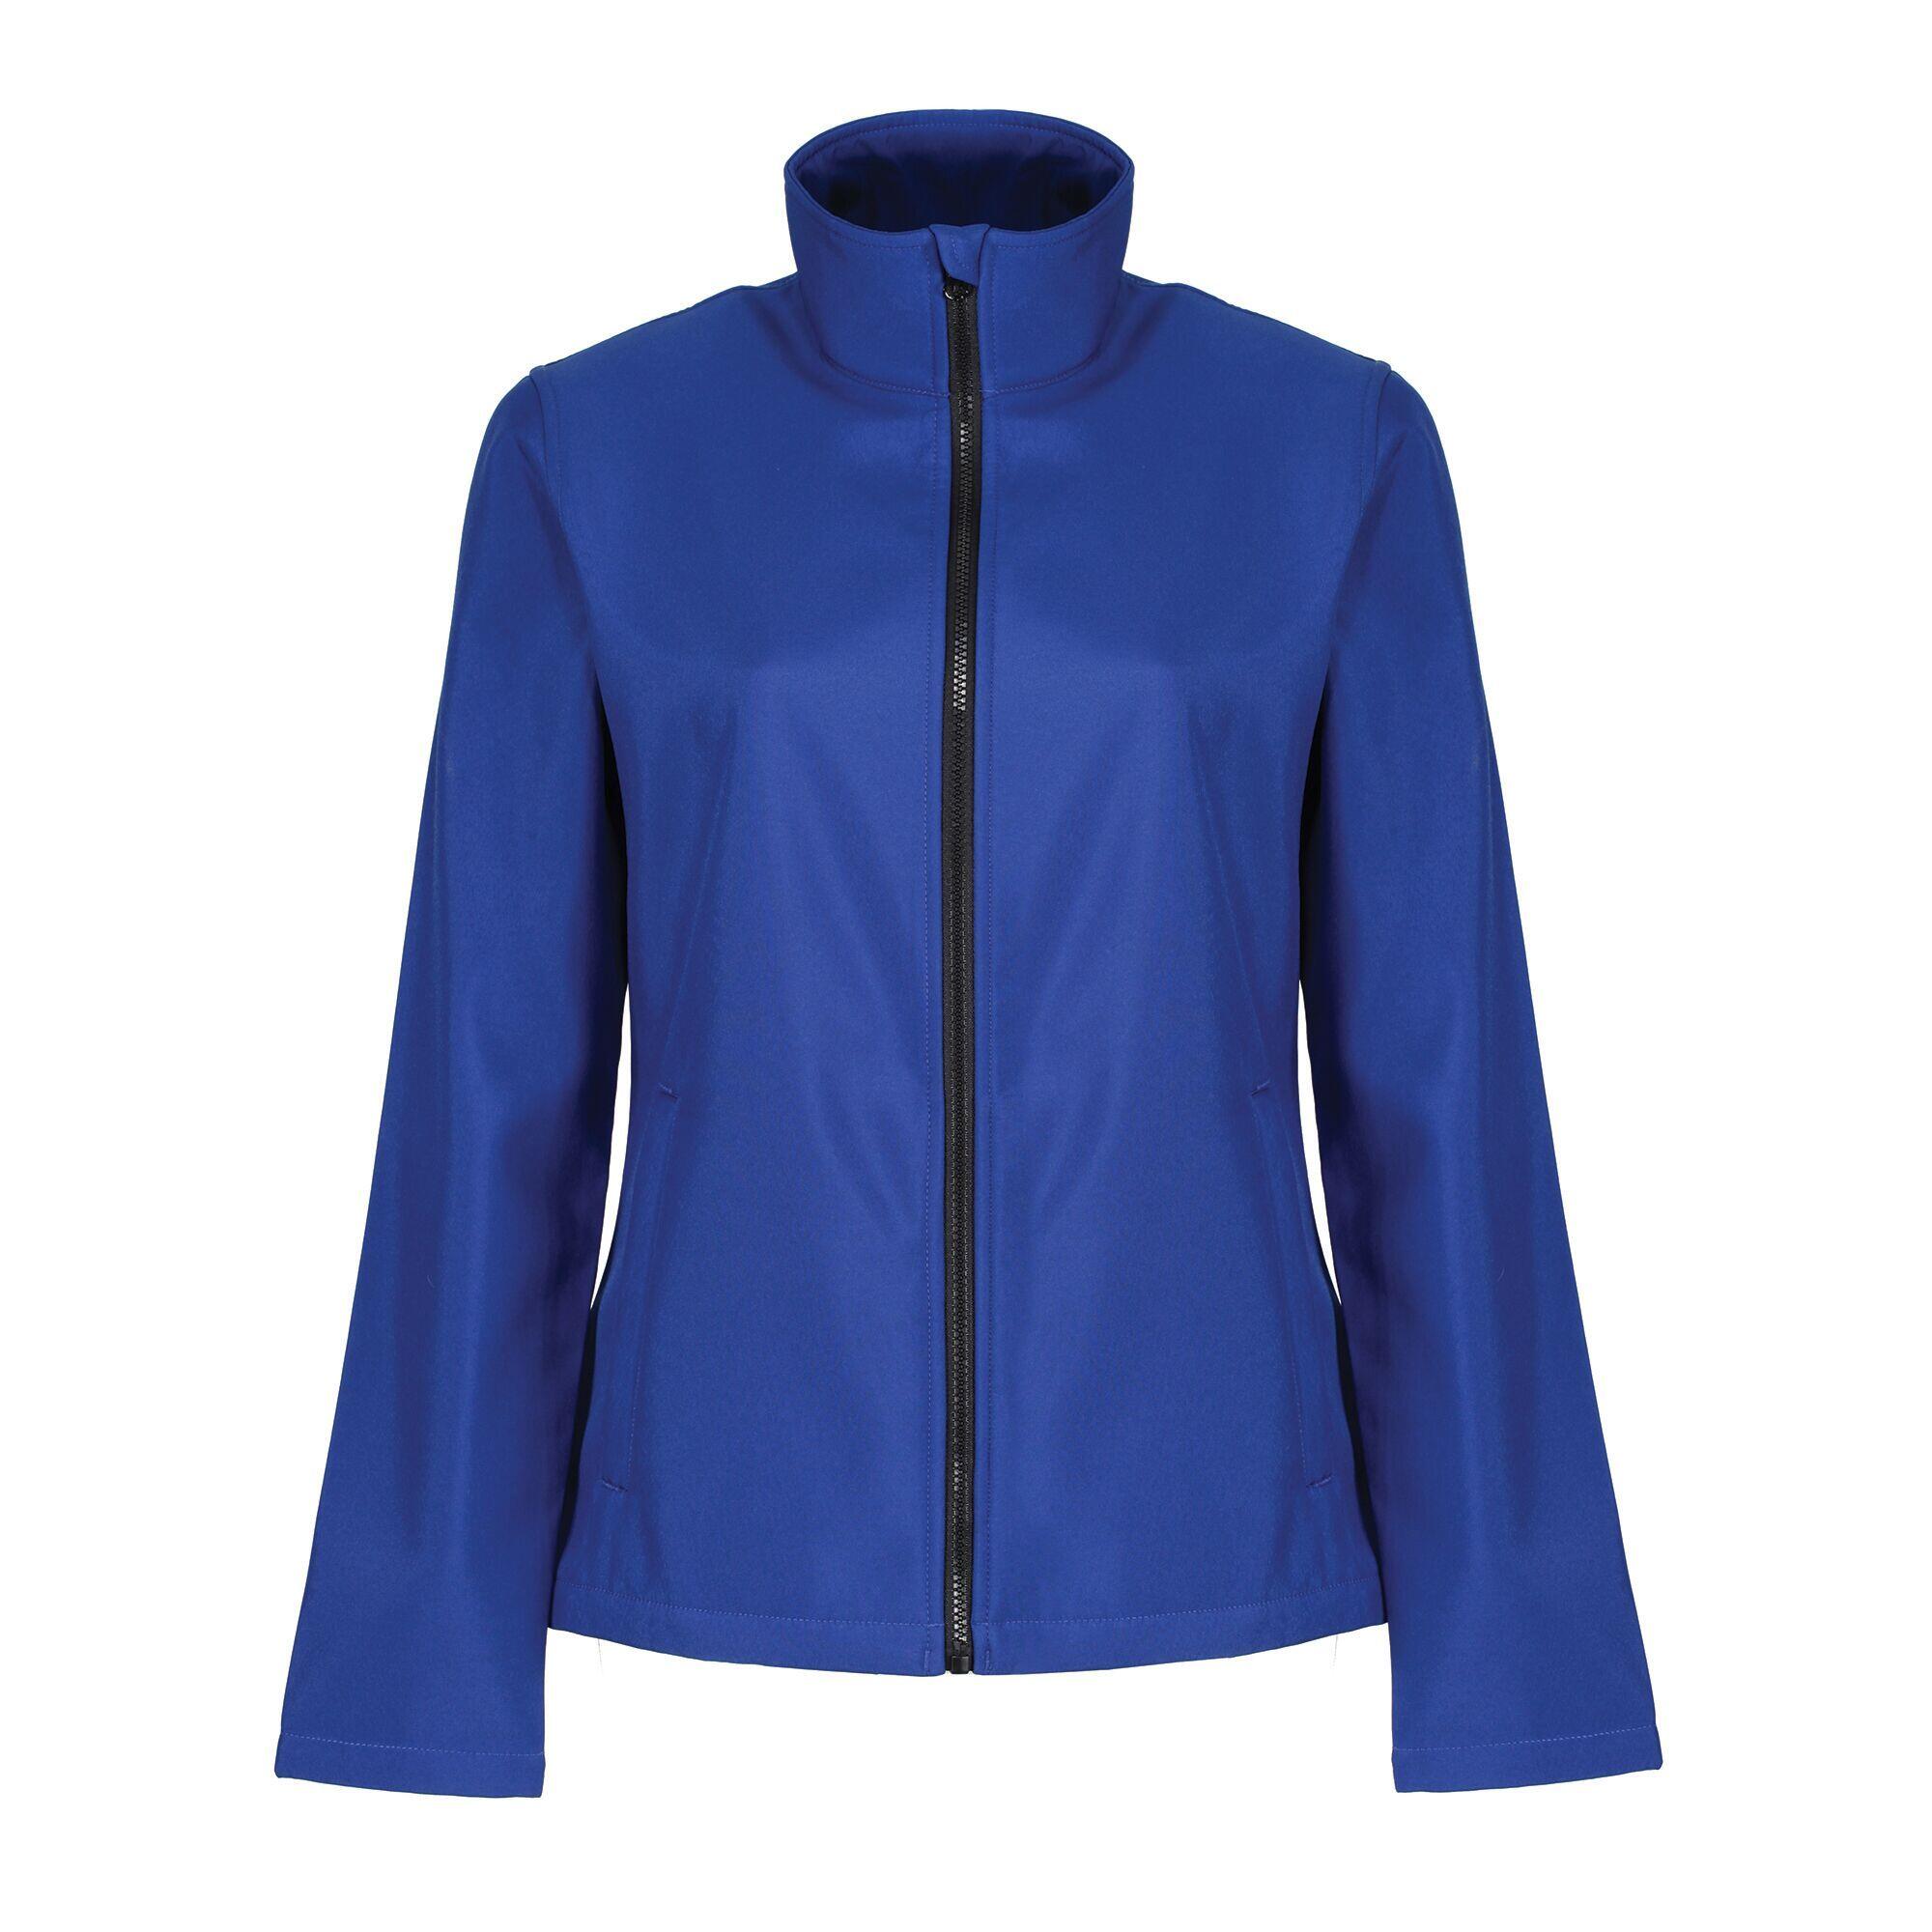 REGATTA Womens/Ladies Ablaze Printable Softshell Jacket (Royal Blue/Black)